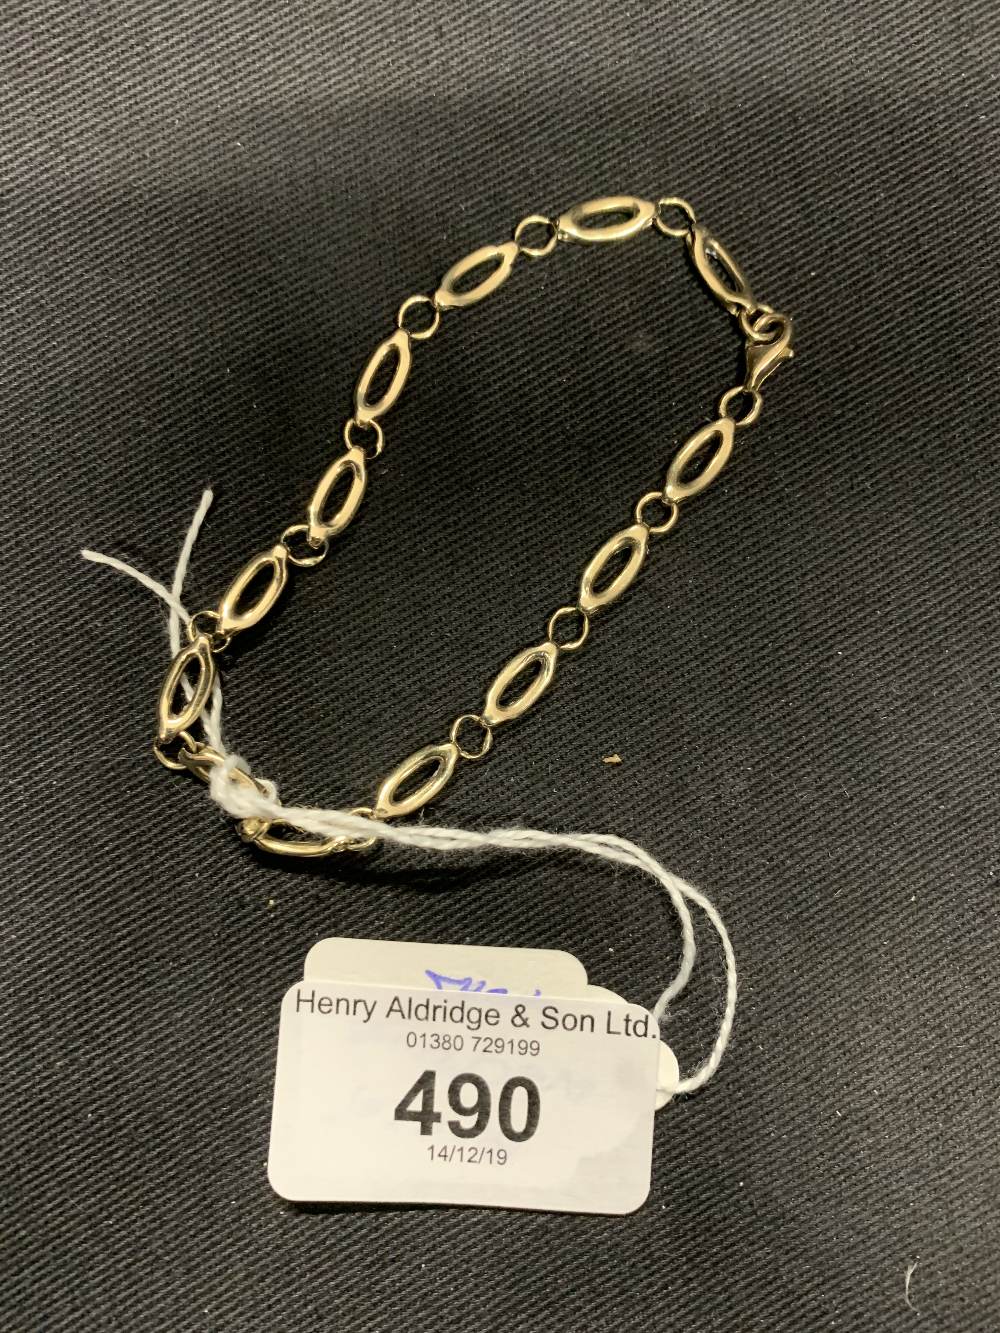 Hallmarked Gold: 9ct. bracelet oval and round links, hallmarked Birmingham. Weight 6.9g.